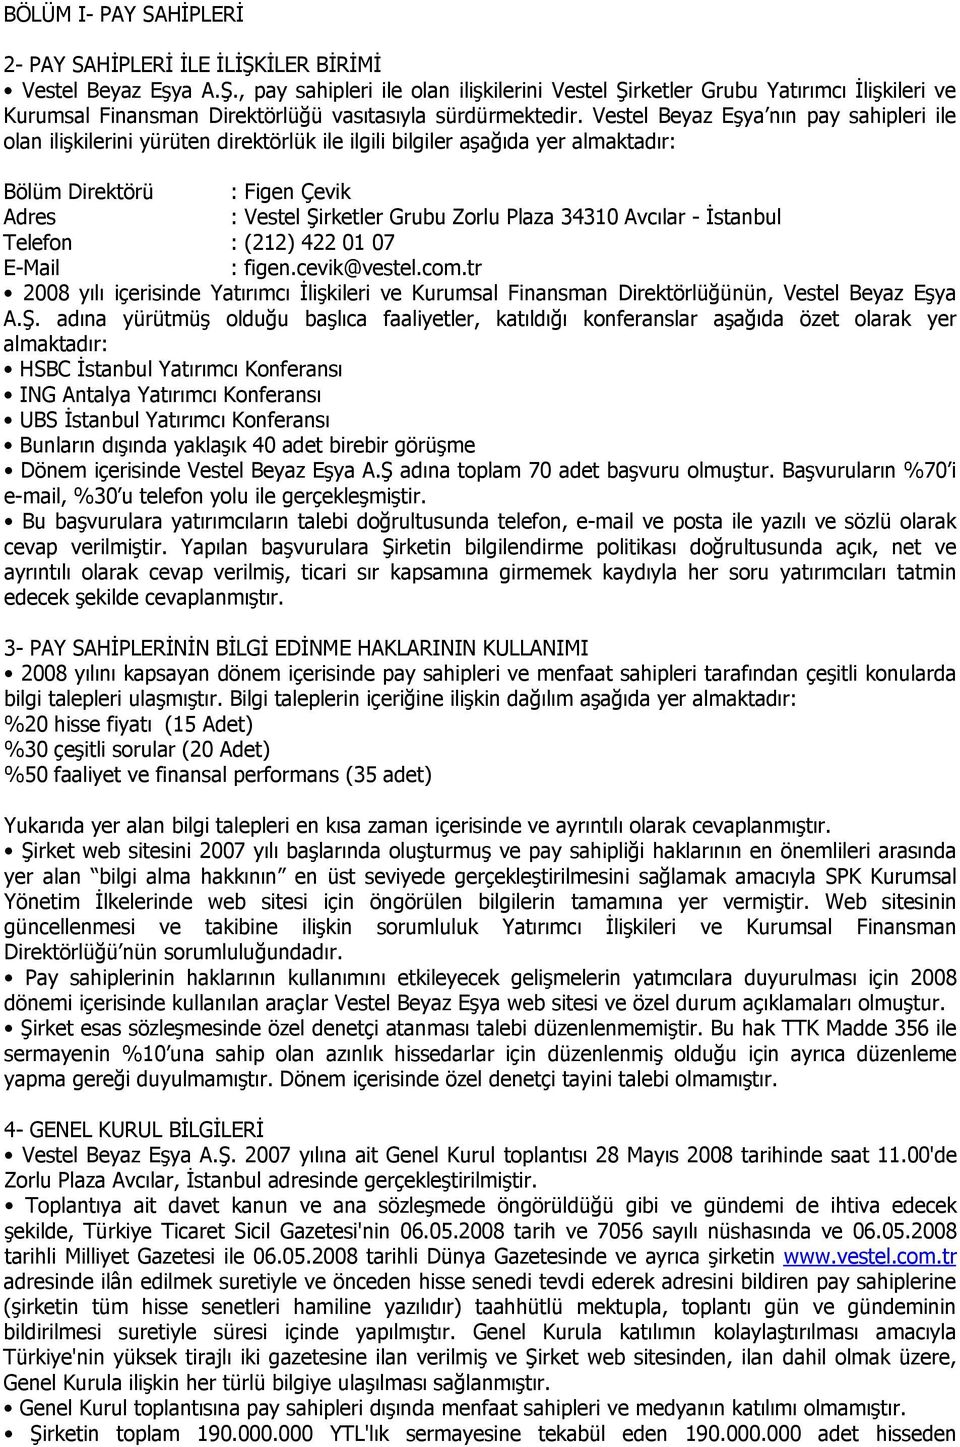 34310 Avcılar - İstanbul Telefon : (212) 422 01 07 E-Mail : figen.cevik@vestel.com.tr 2008 yılı içerisinde Yatırımcı İlişkileri ve Kurumsal Finansman Direktörlüğünün, Vestel Beyaz Eşya A.Ş.